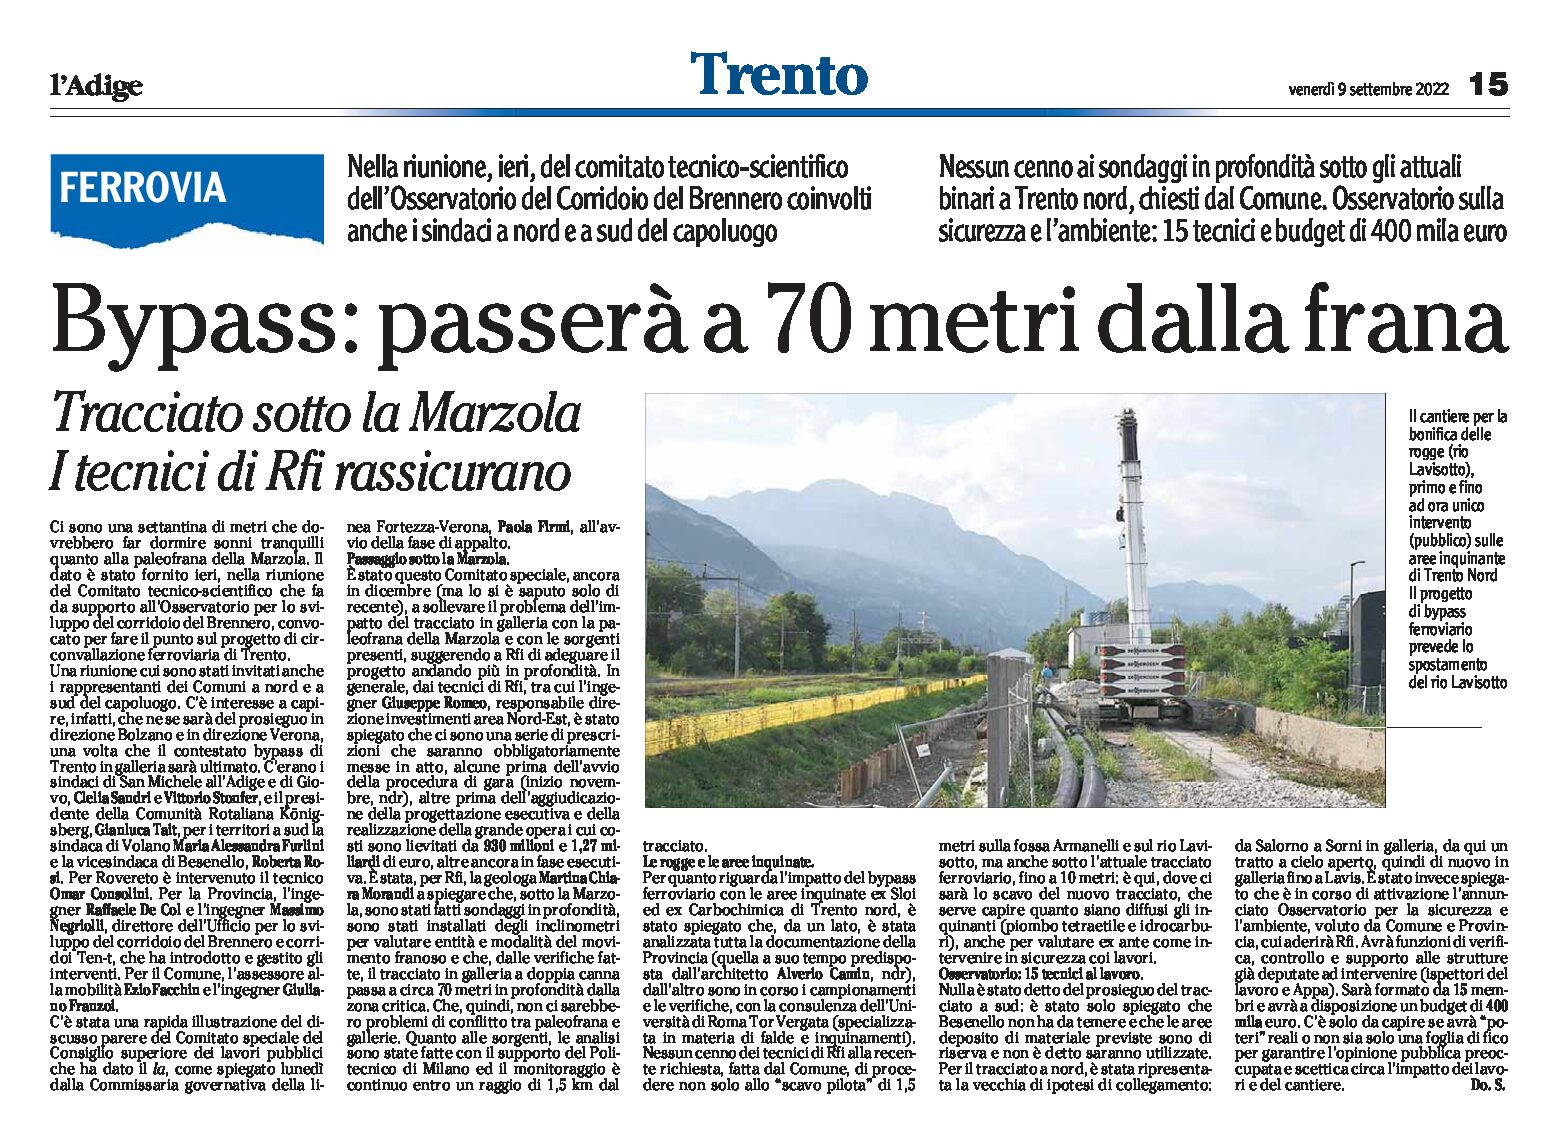 Trento, bypass: passerà a 70 metri dalla frana, tracciato sotto la Marzola. I tecnici di Rfi rassicurano